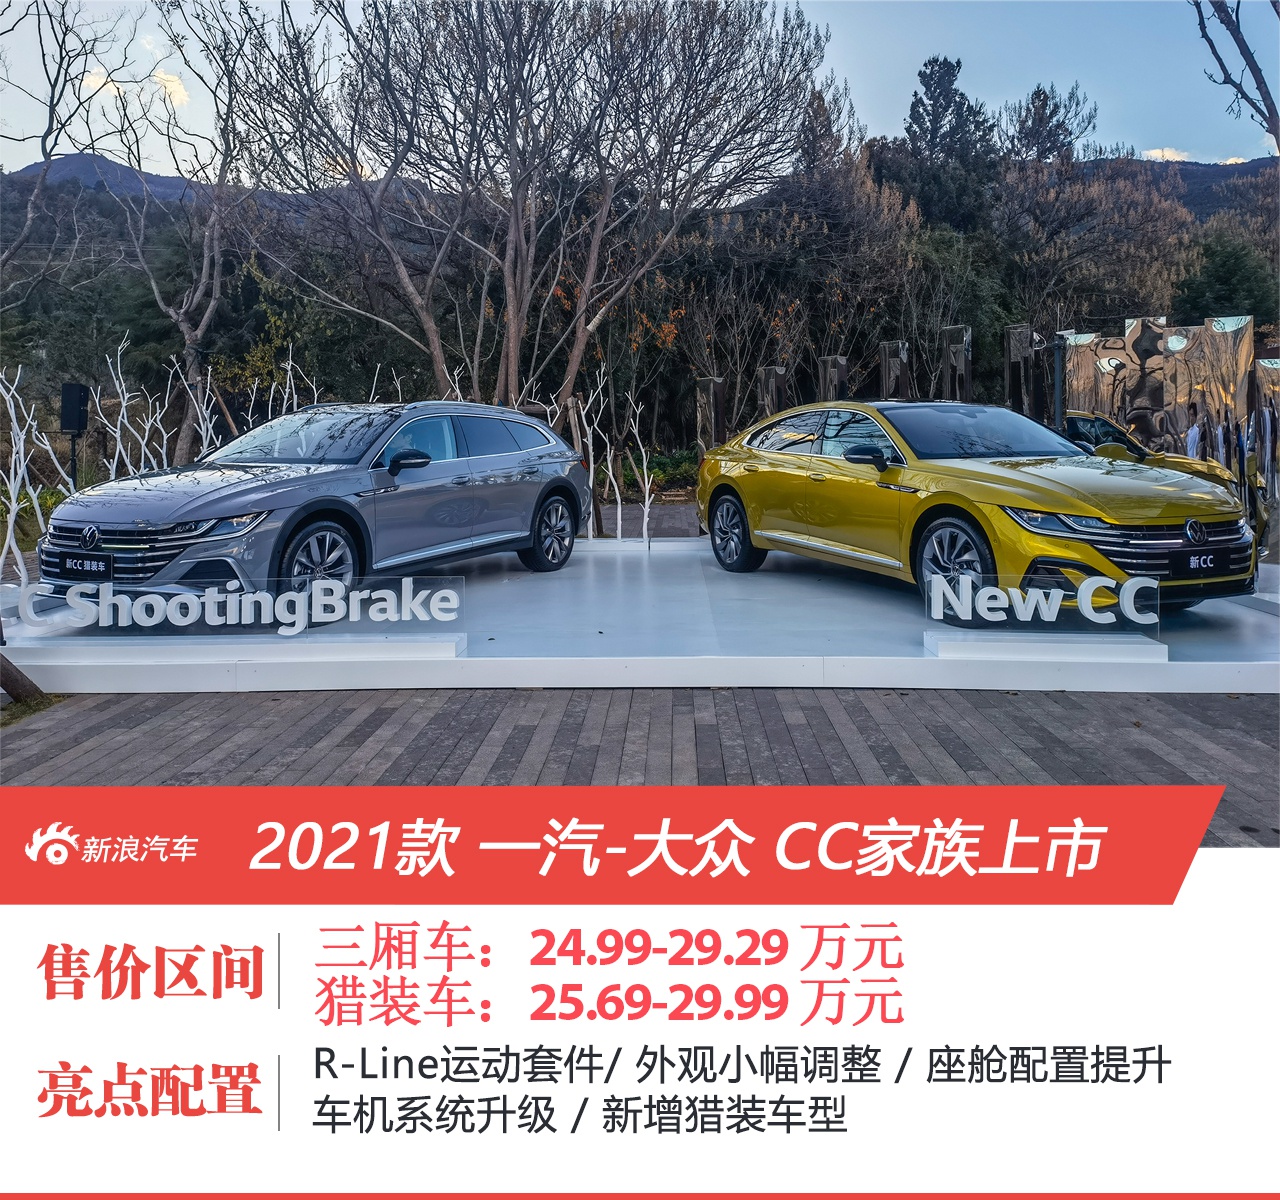 一汽-大众新款CC家族正式上市 售24.99-29.99万元